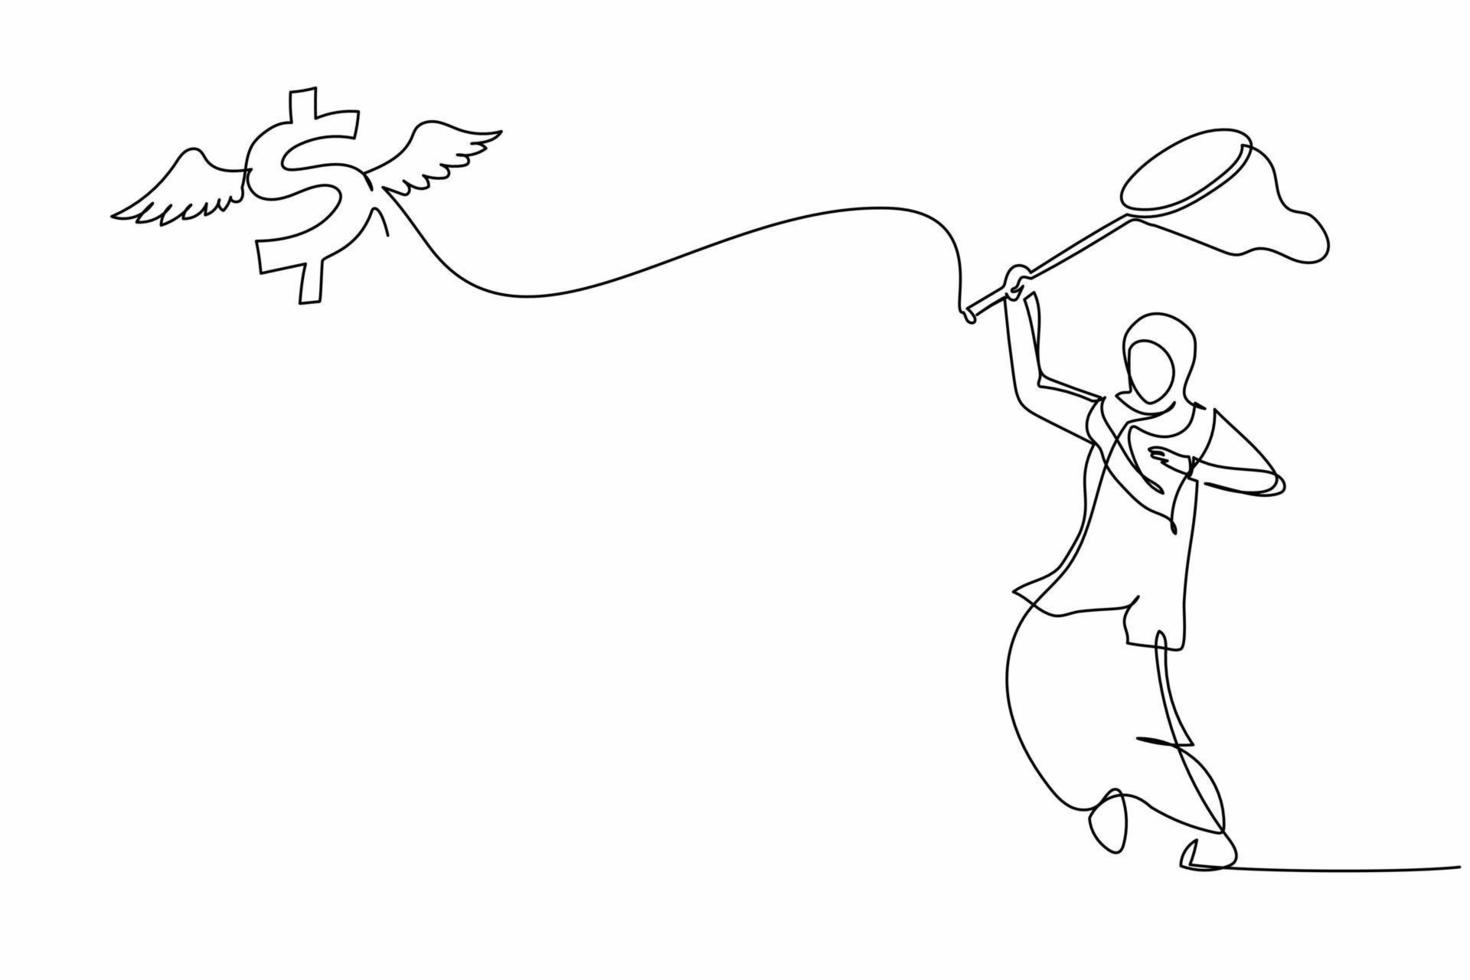 singolo continuo linea disegno arabo donna d'affari provare per attraente volante dollaro simbolo con farfalla rete. dollaro inflazione cause prezzi per salita. uno linea disegnare grafico design vettore illustrazione